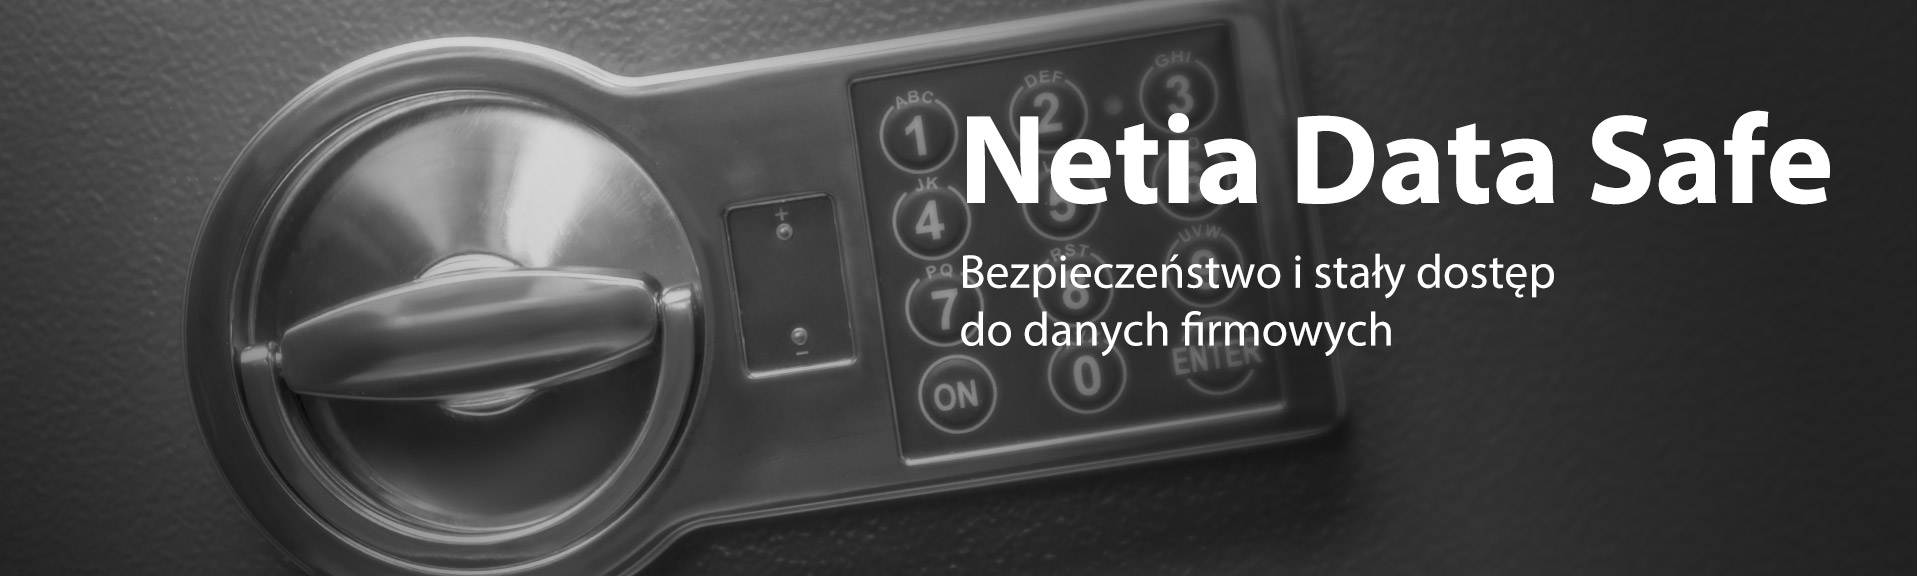 netia-data-safe-(1).jpg